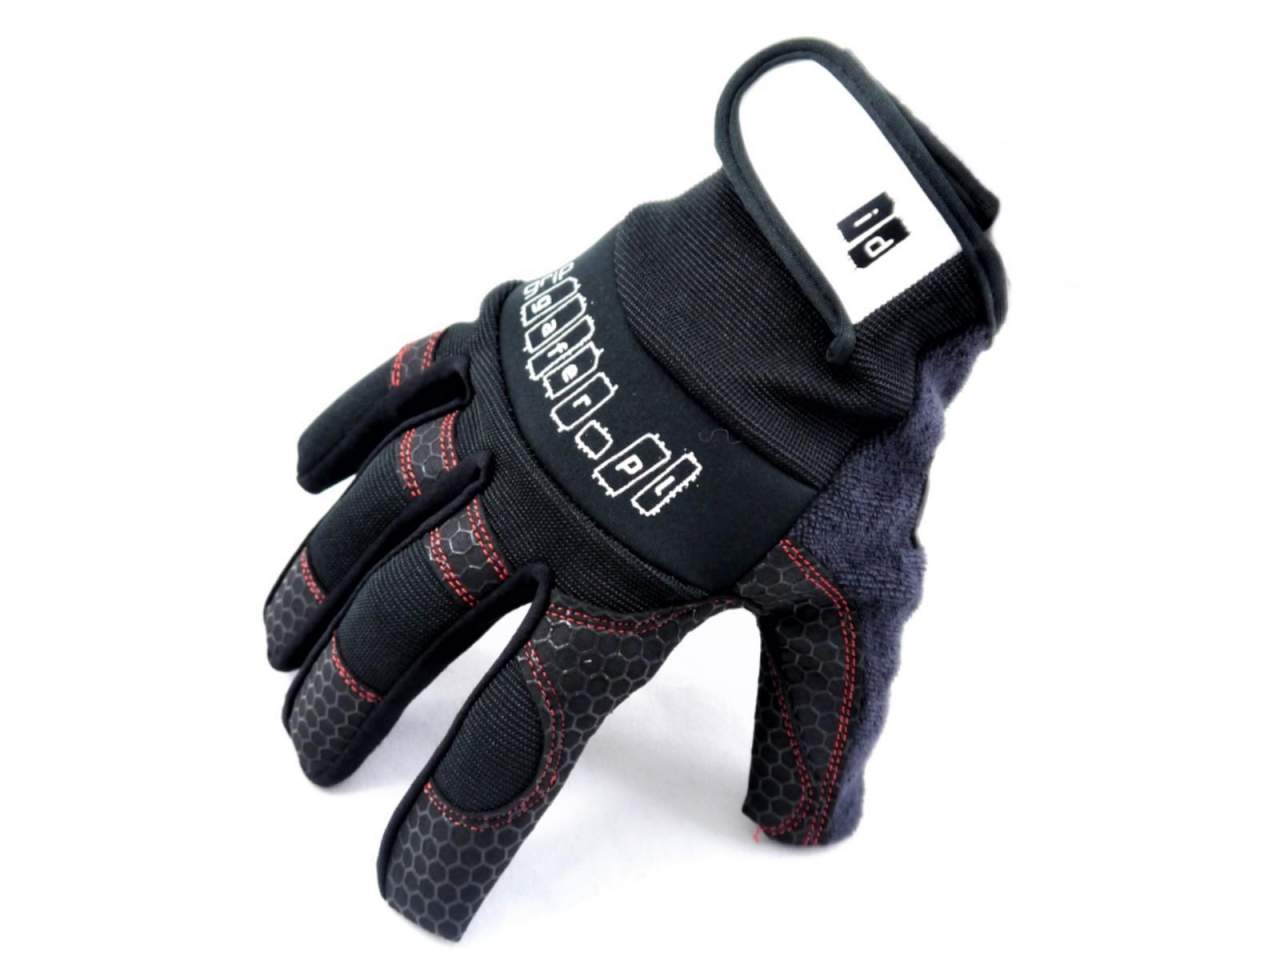 GAFER-PL Grip glove Handschuh- Grsse L